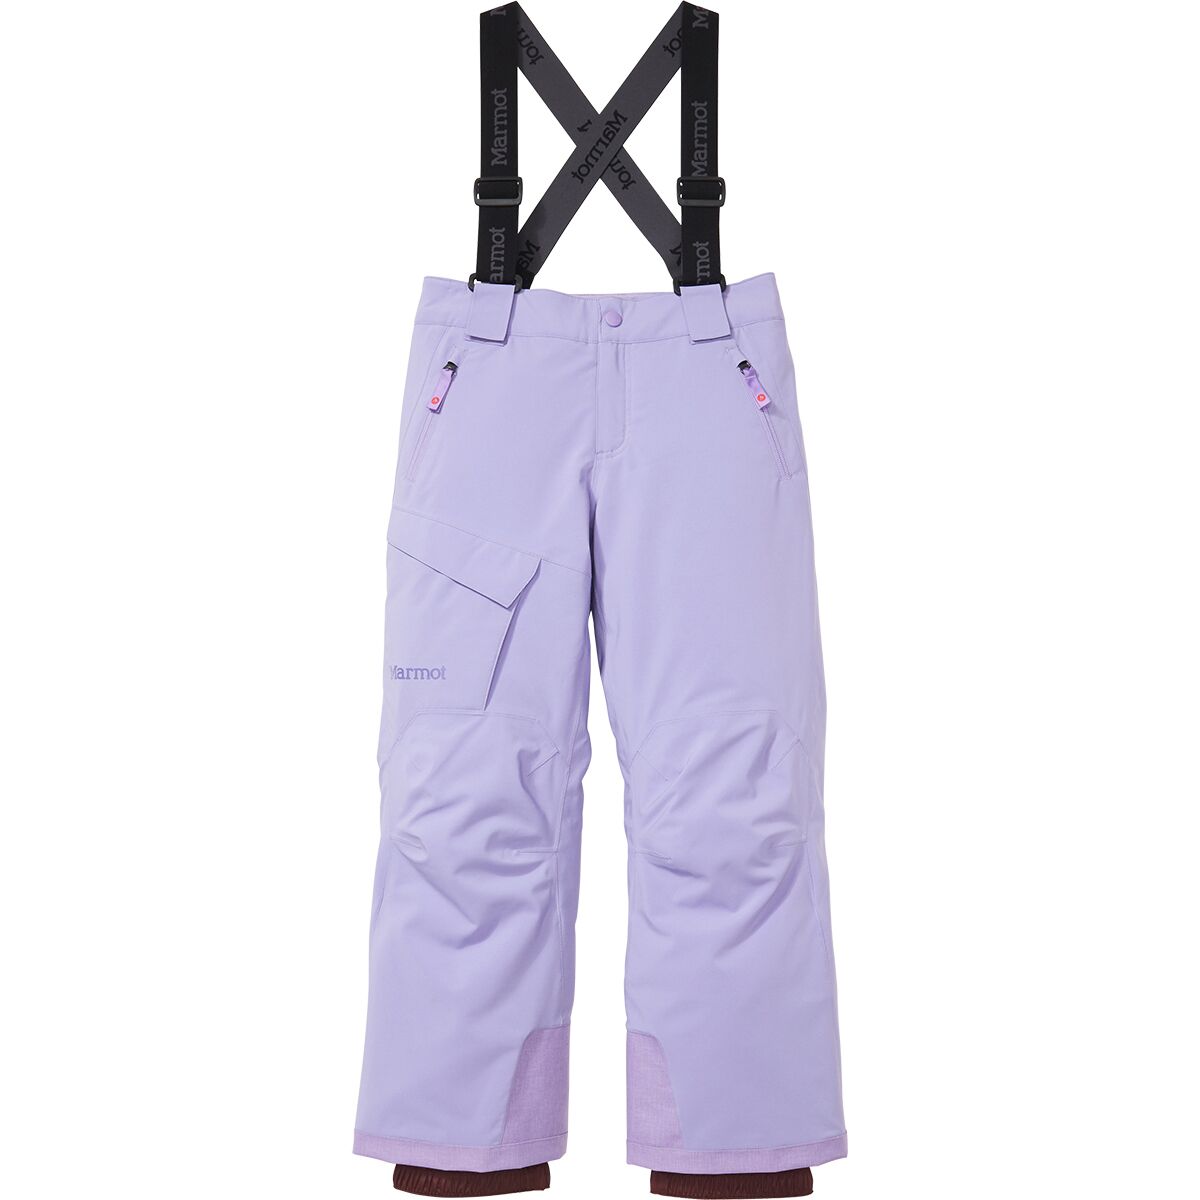 Marmot Kids' Clothing | Backcountry.com